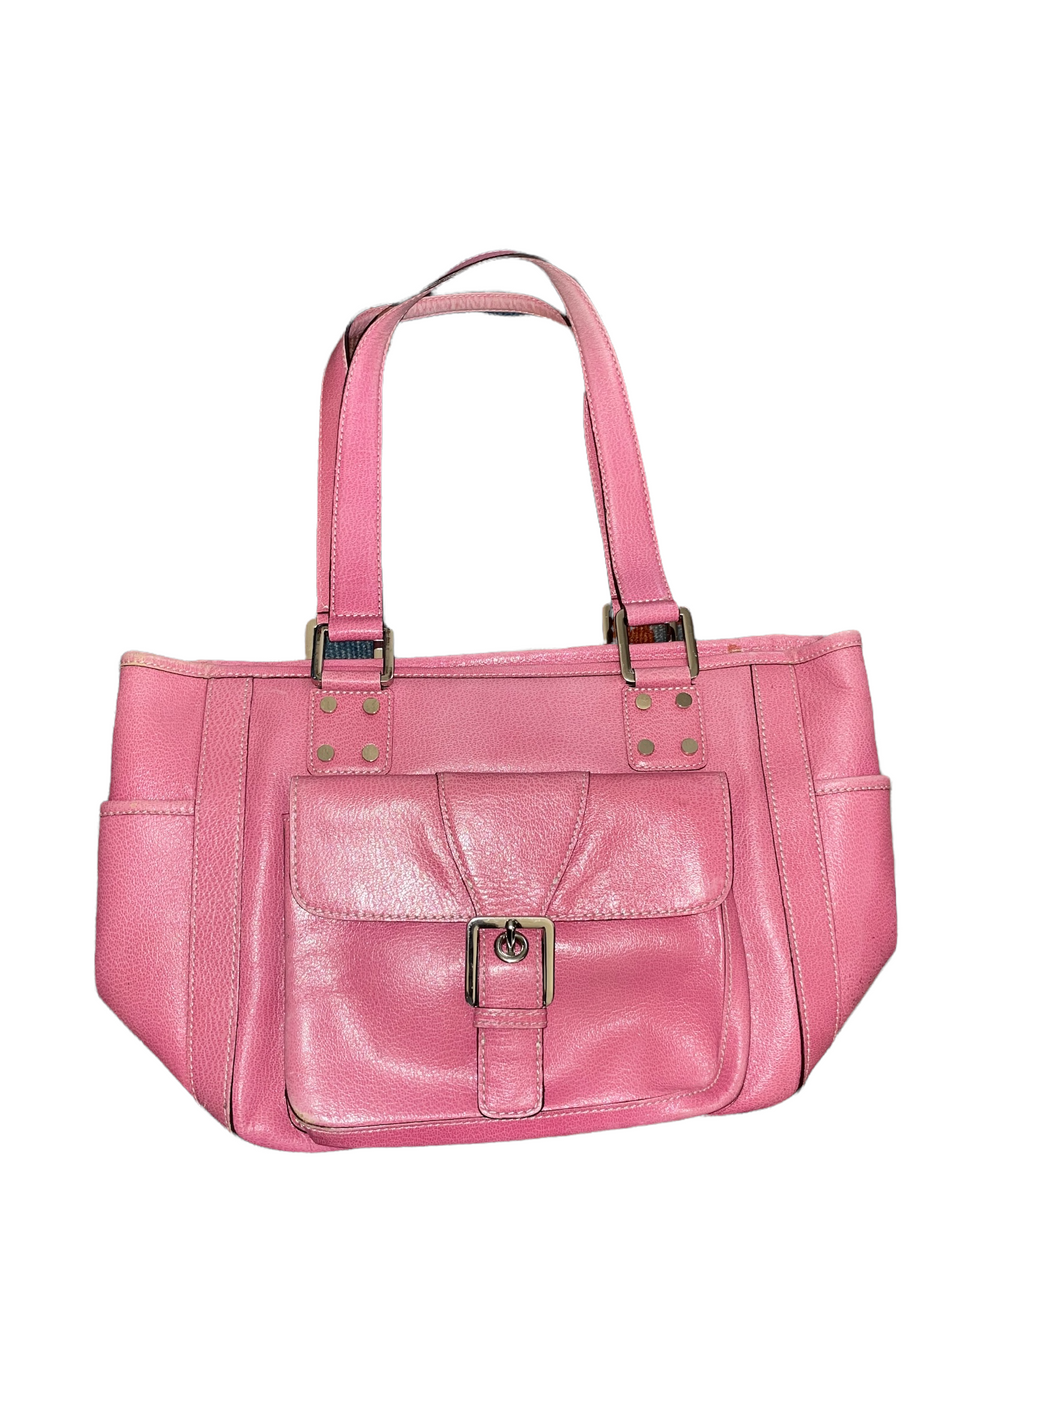 Nordstrom Pink Genuine Leather Handbag